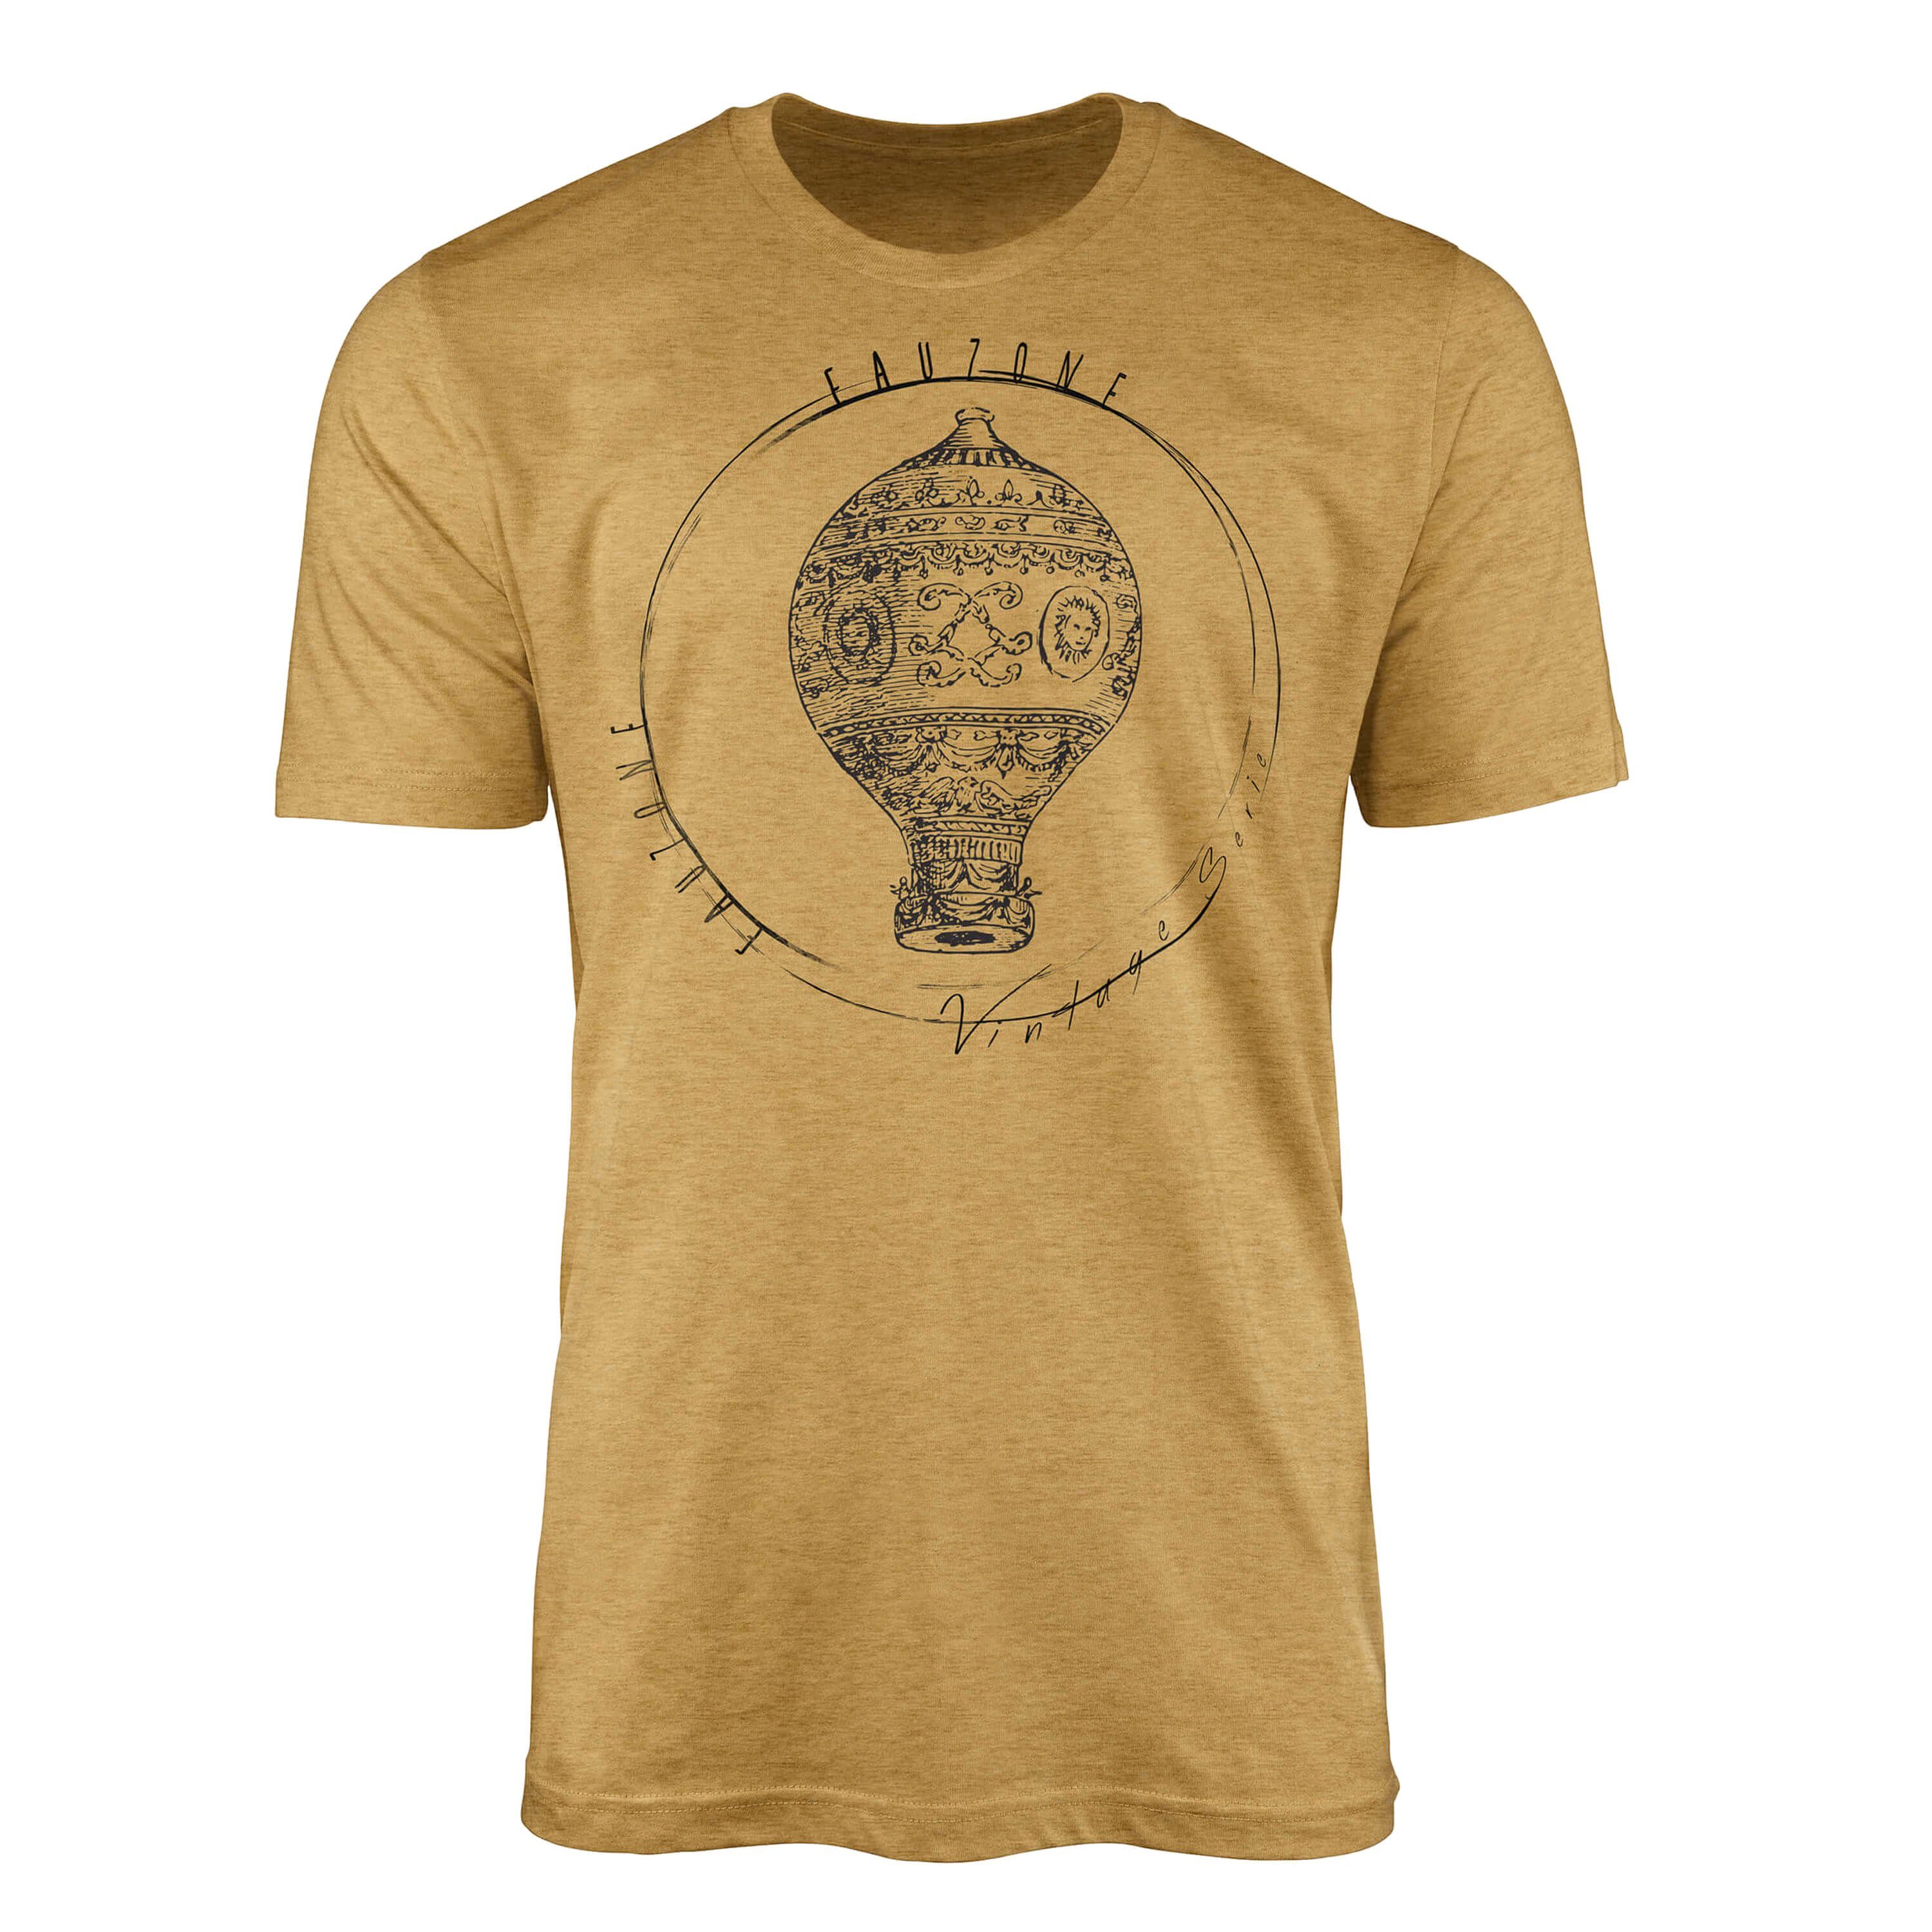 Vintage Art T-Shirt Sinus Heizluftballon T-Shirt Antique Gold Herren